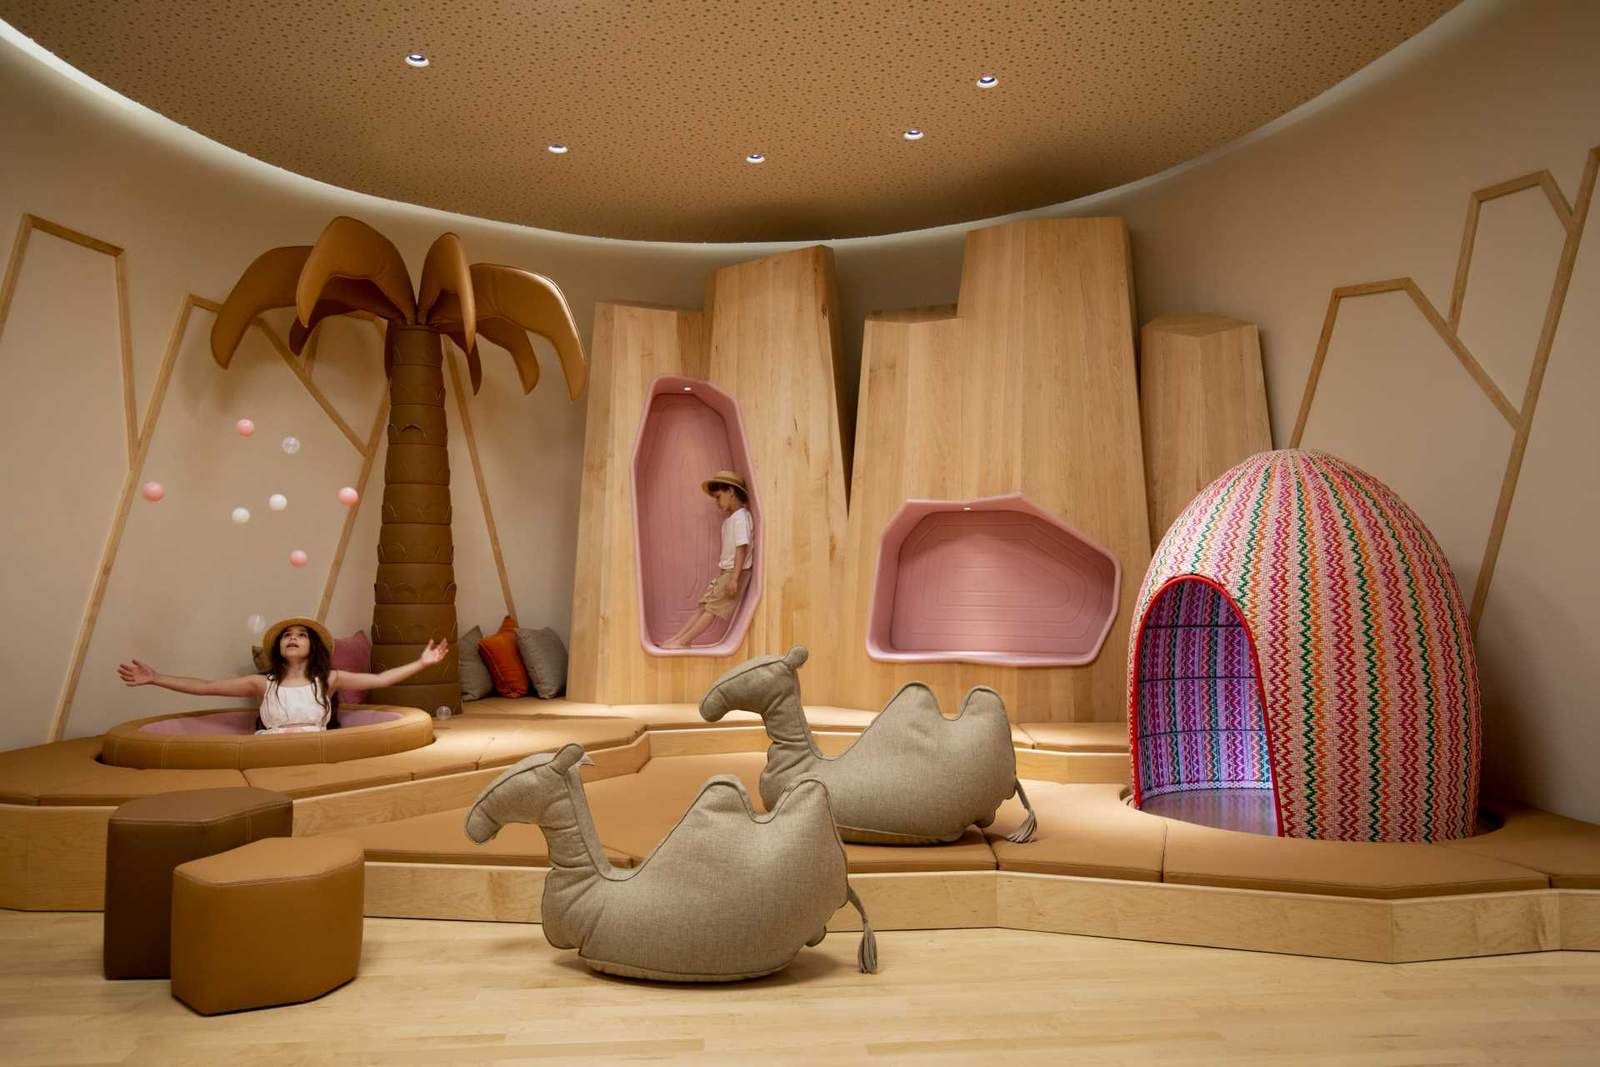 تم تصميم غرفة اللعب داخل هذا الفندق بموضوع الصحراء